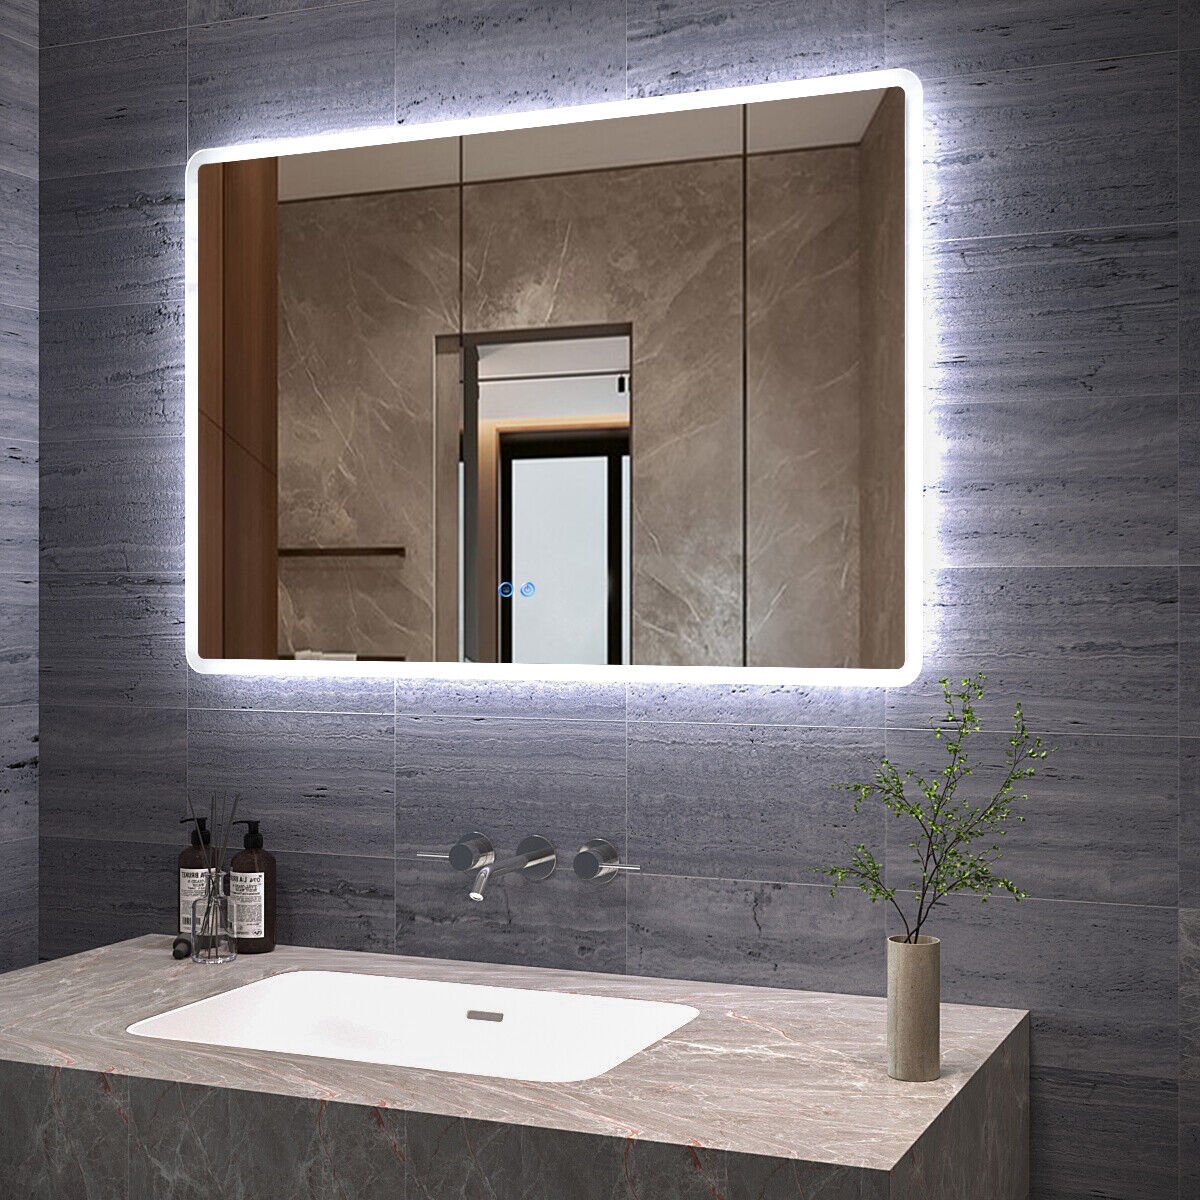 AQUALAVOS Badspiegel Eckig Badspiegel mit 6400K Kaltweiß LED-Beleuchtung Touch Wandspiegel, abgerundete Ecken, Anti-Beschlag-Funktion, Dimmbar, Schutzklasse IP44